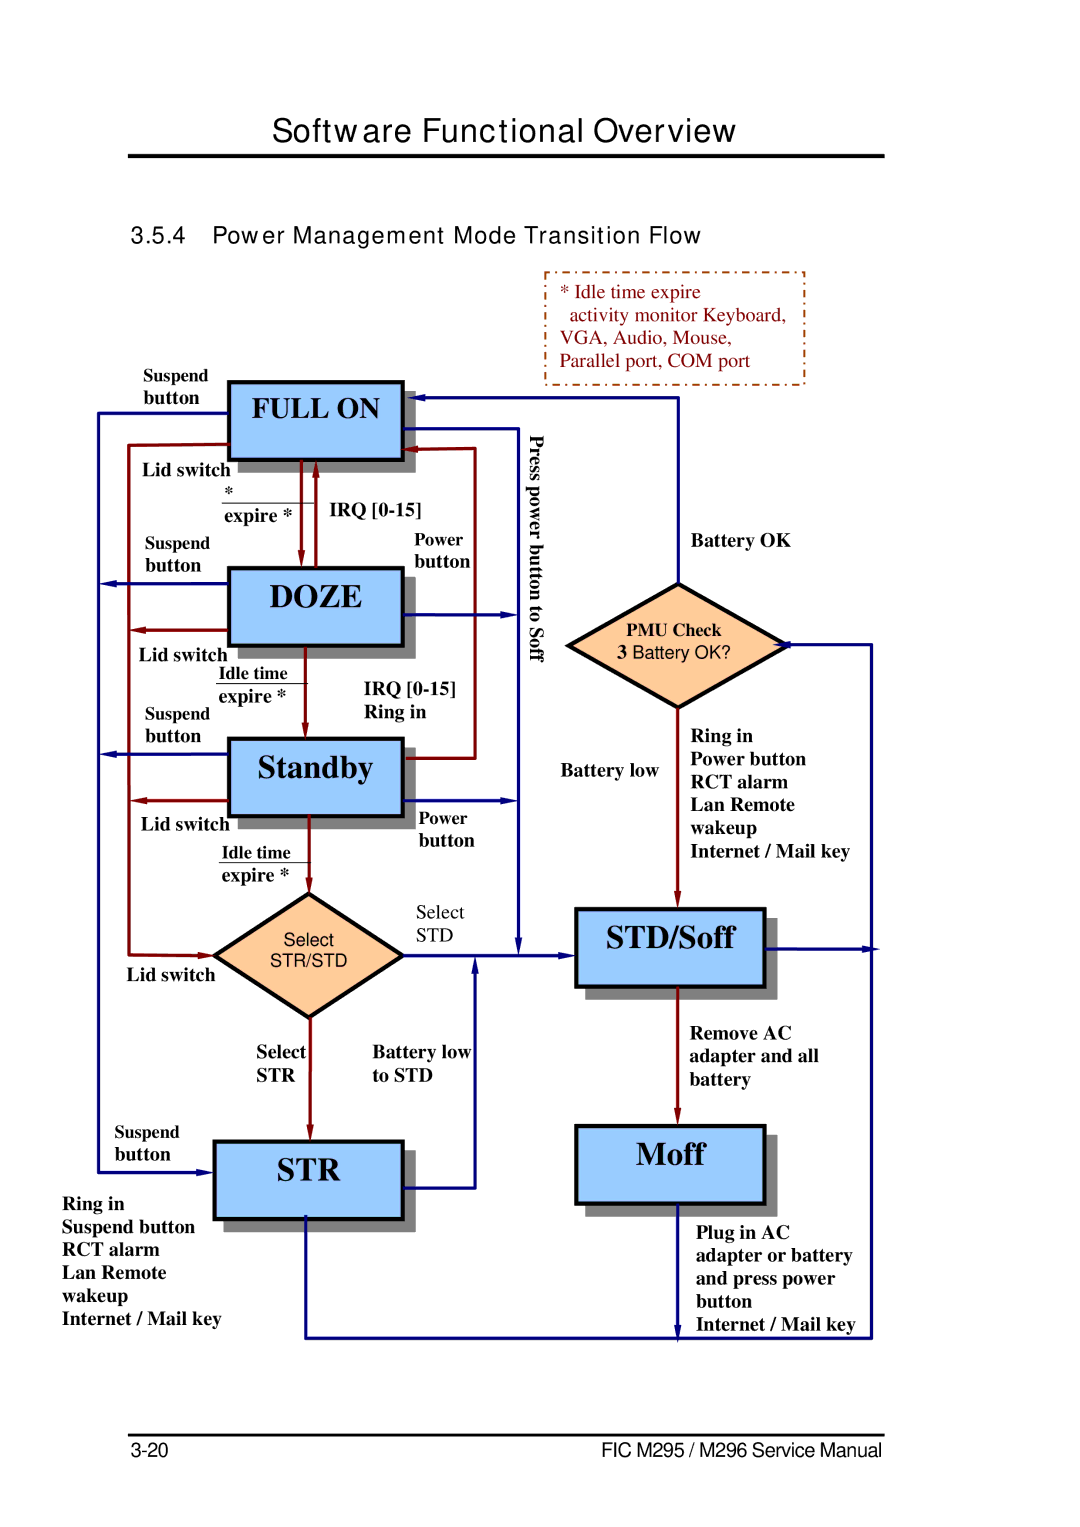 FIC M295, M296 service manual Power Management Mode Transition Flow 